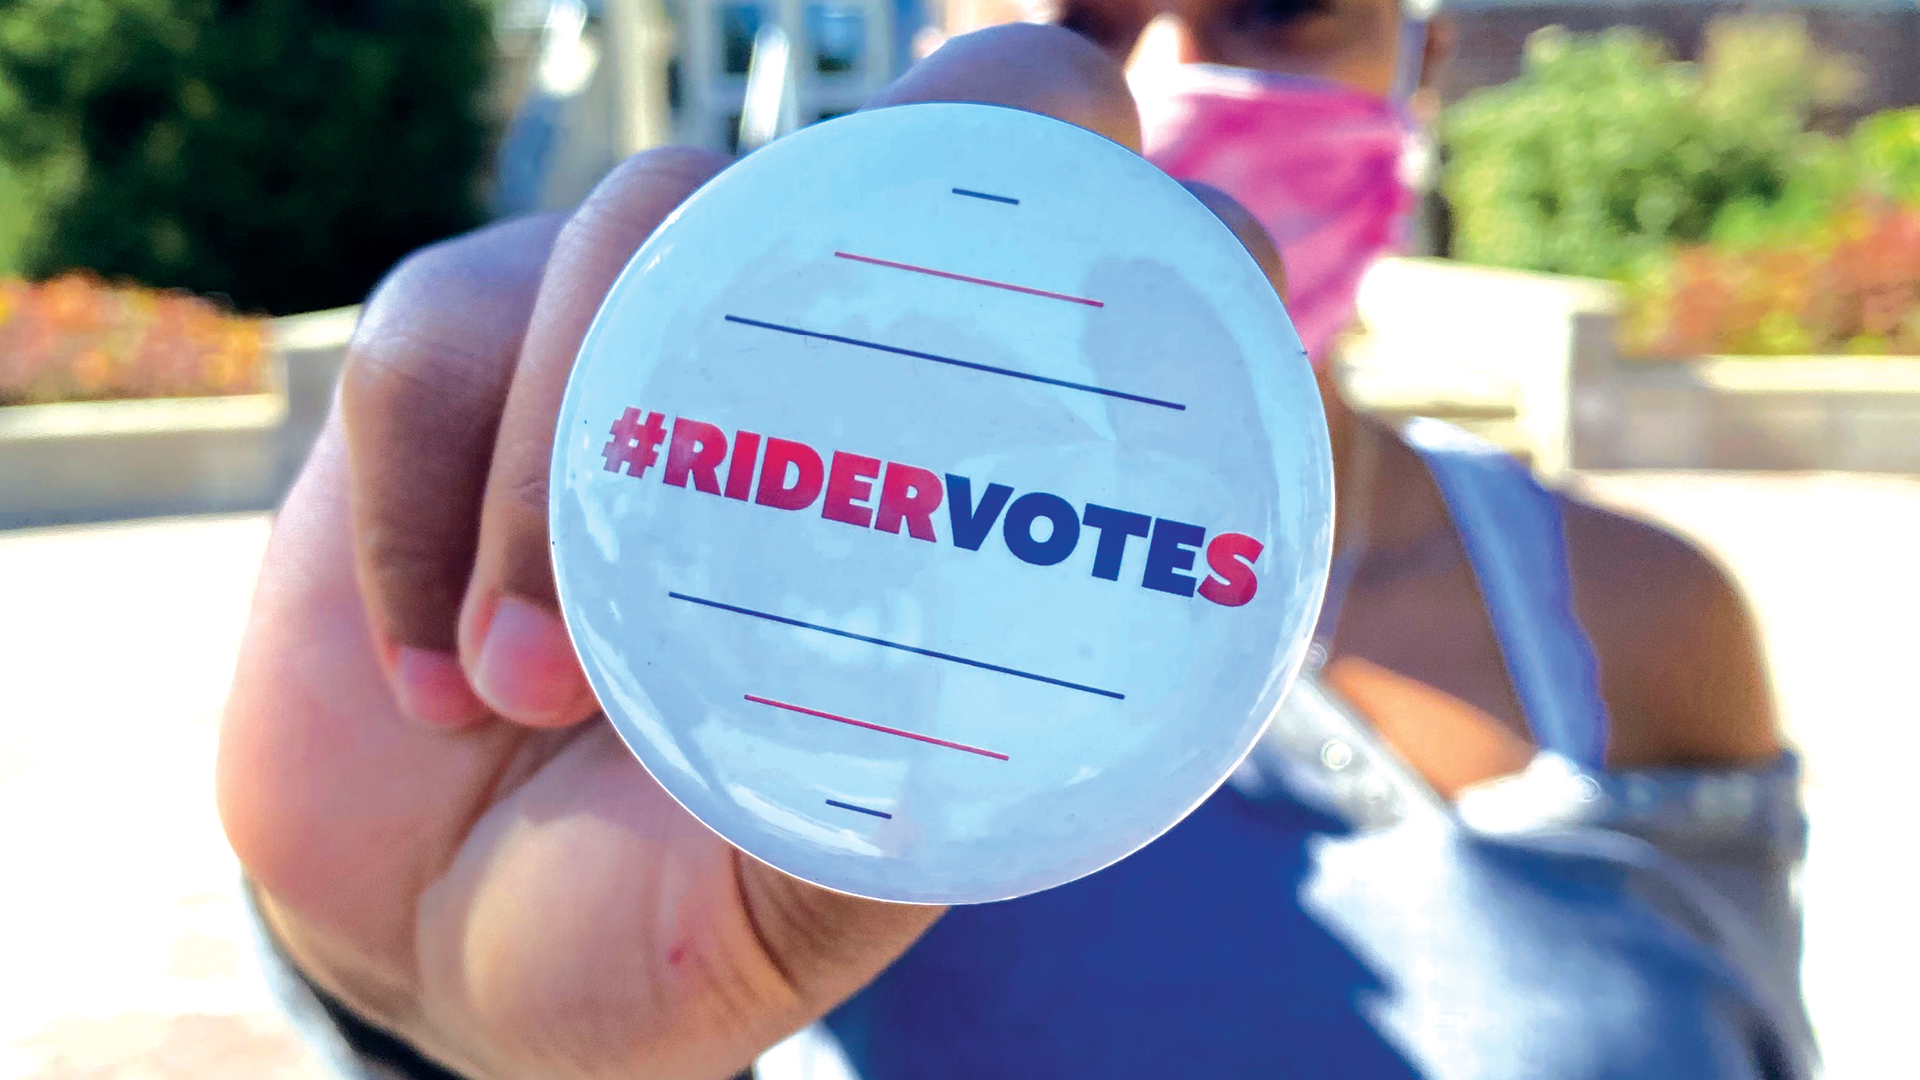 Rider Votes button